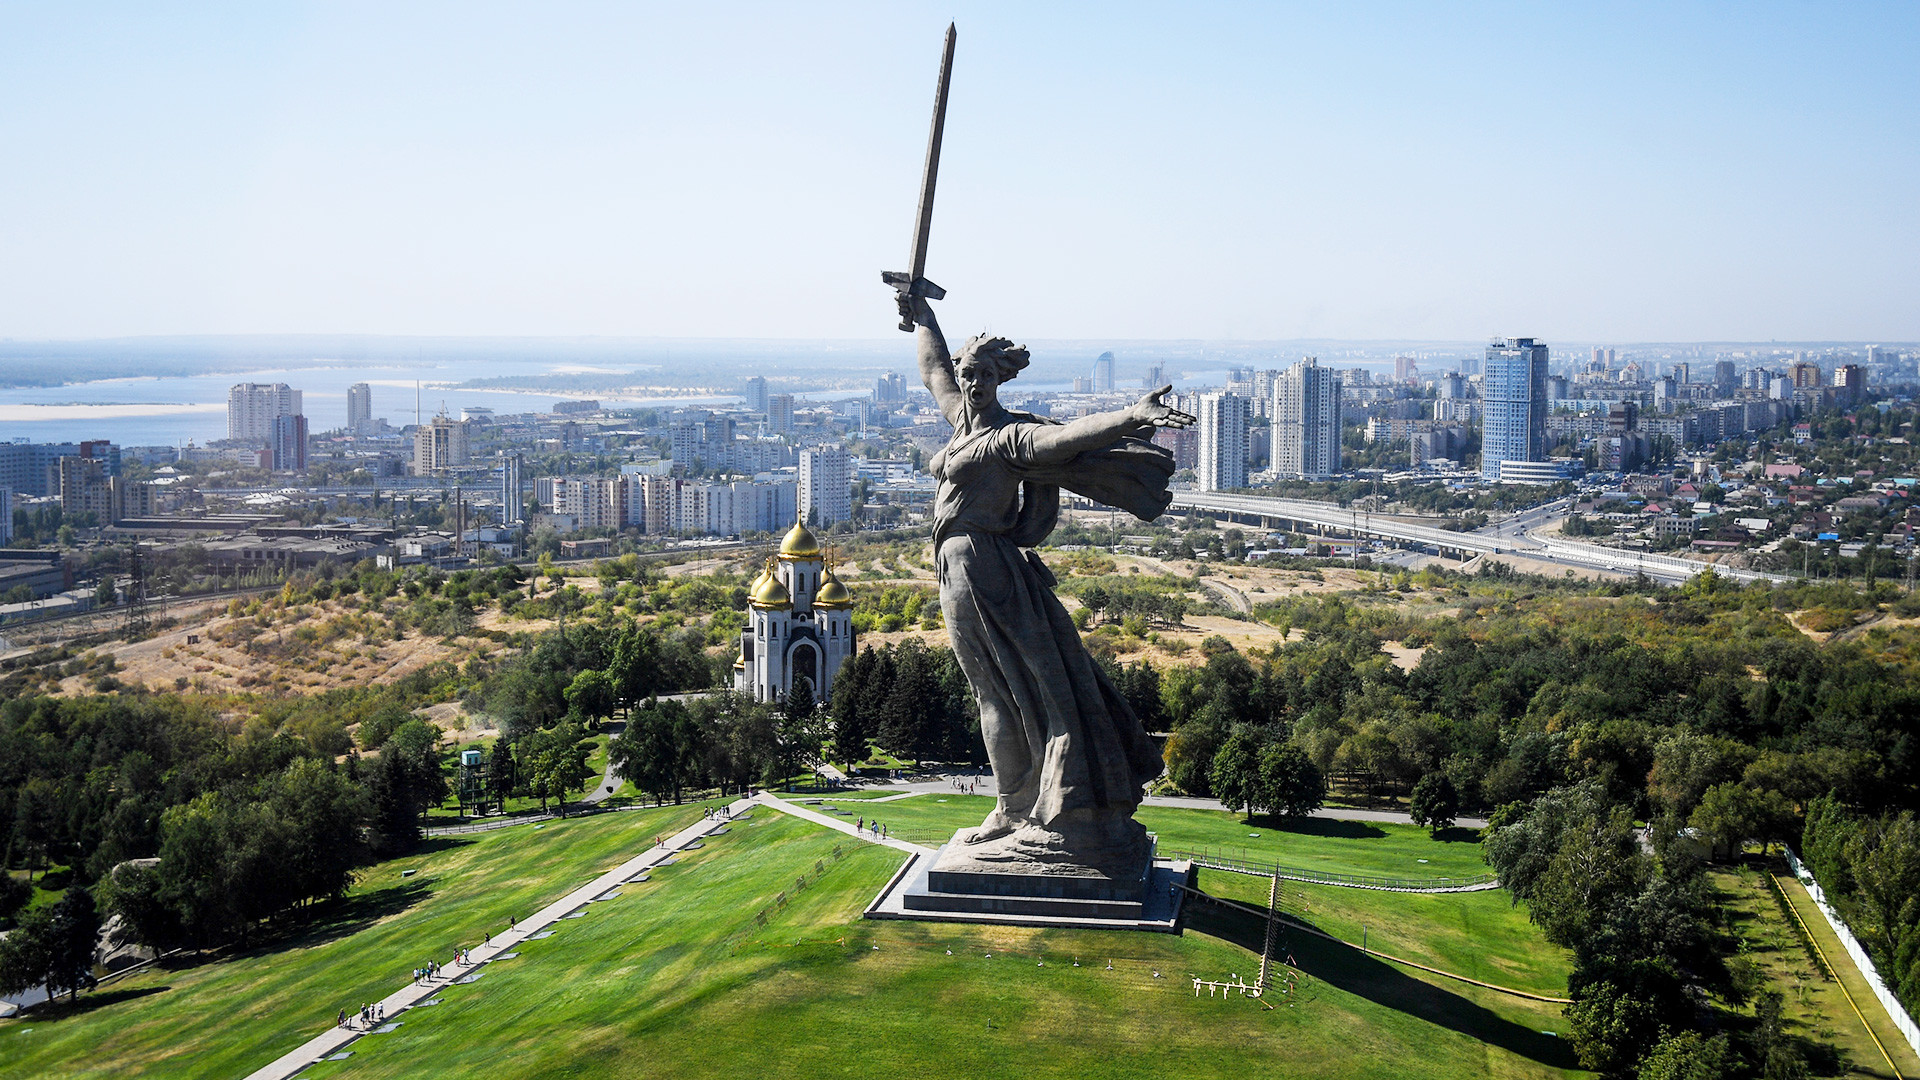 巨像 母なる祖国像 の内部はどうなっているのか 写真特集 ロシア ビヨンド